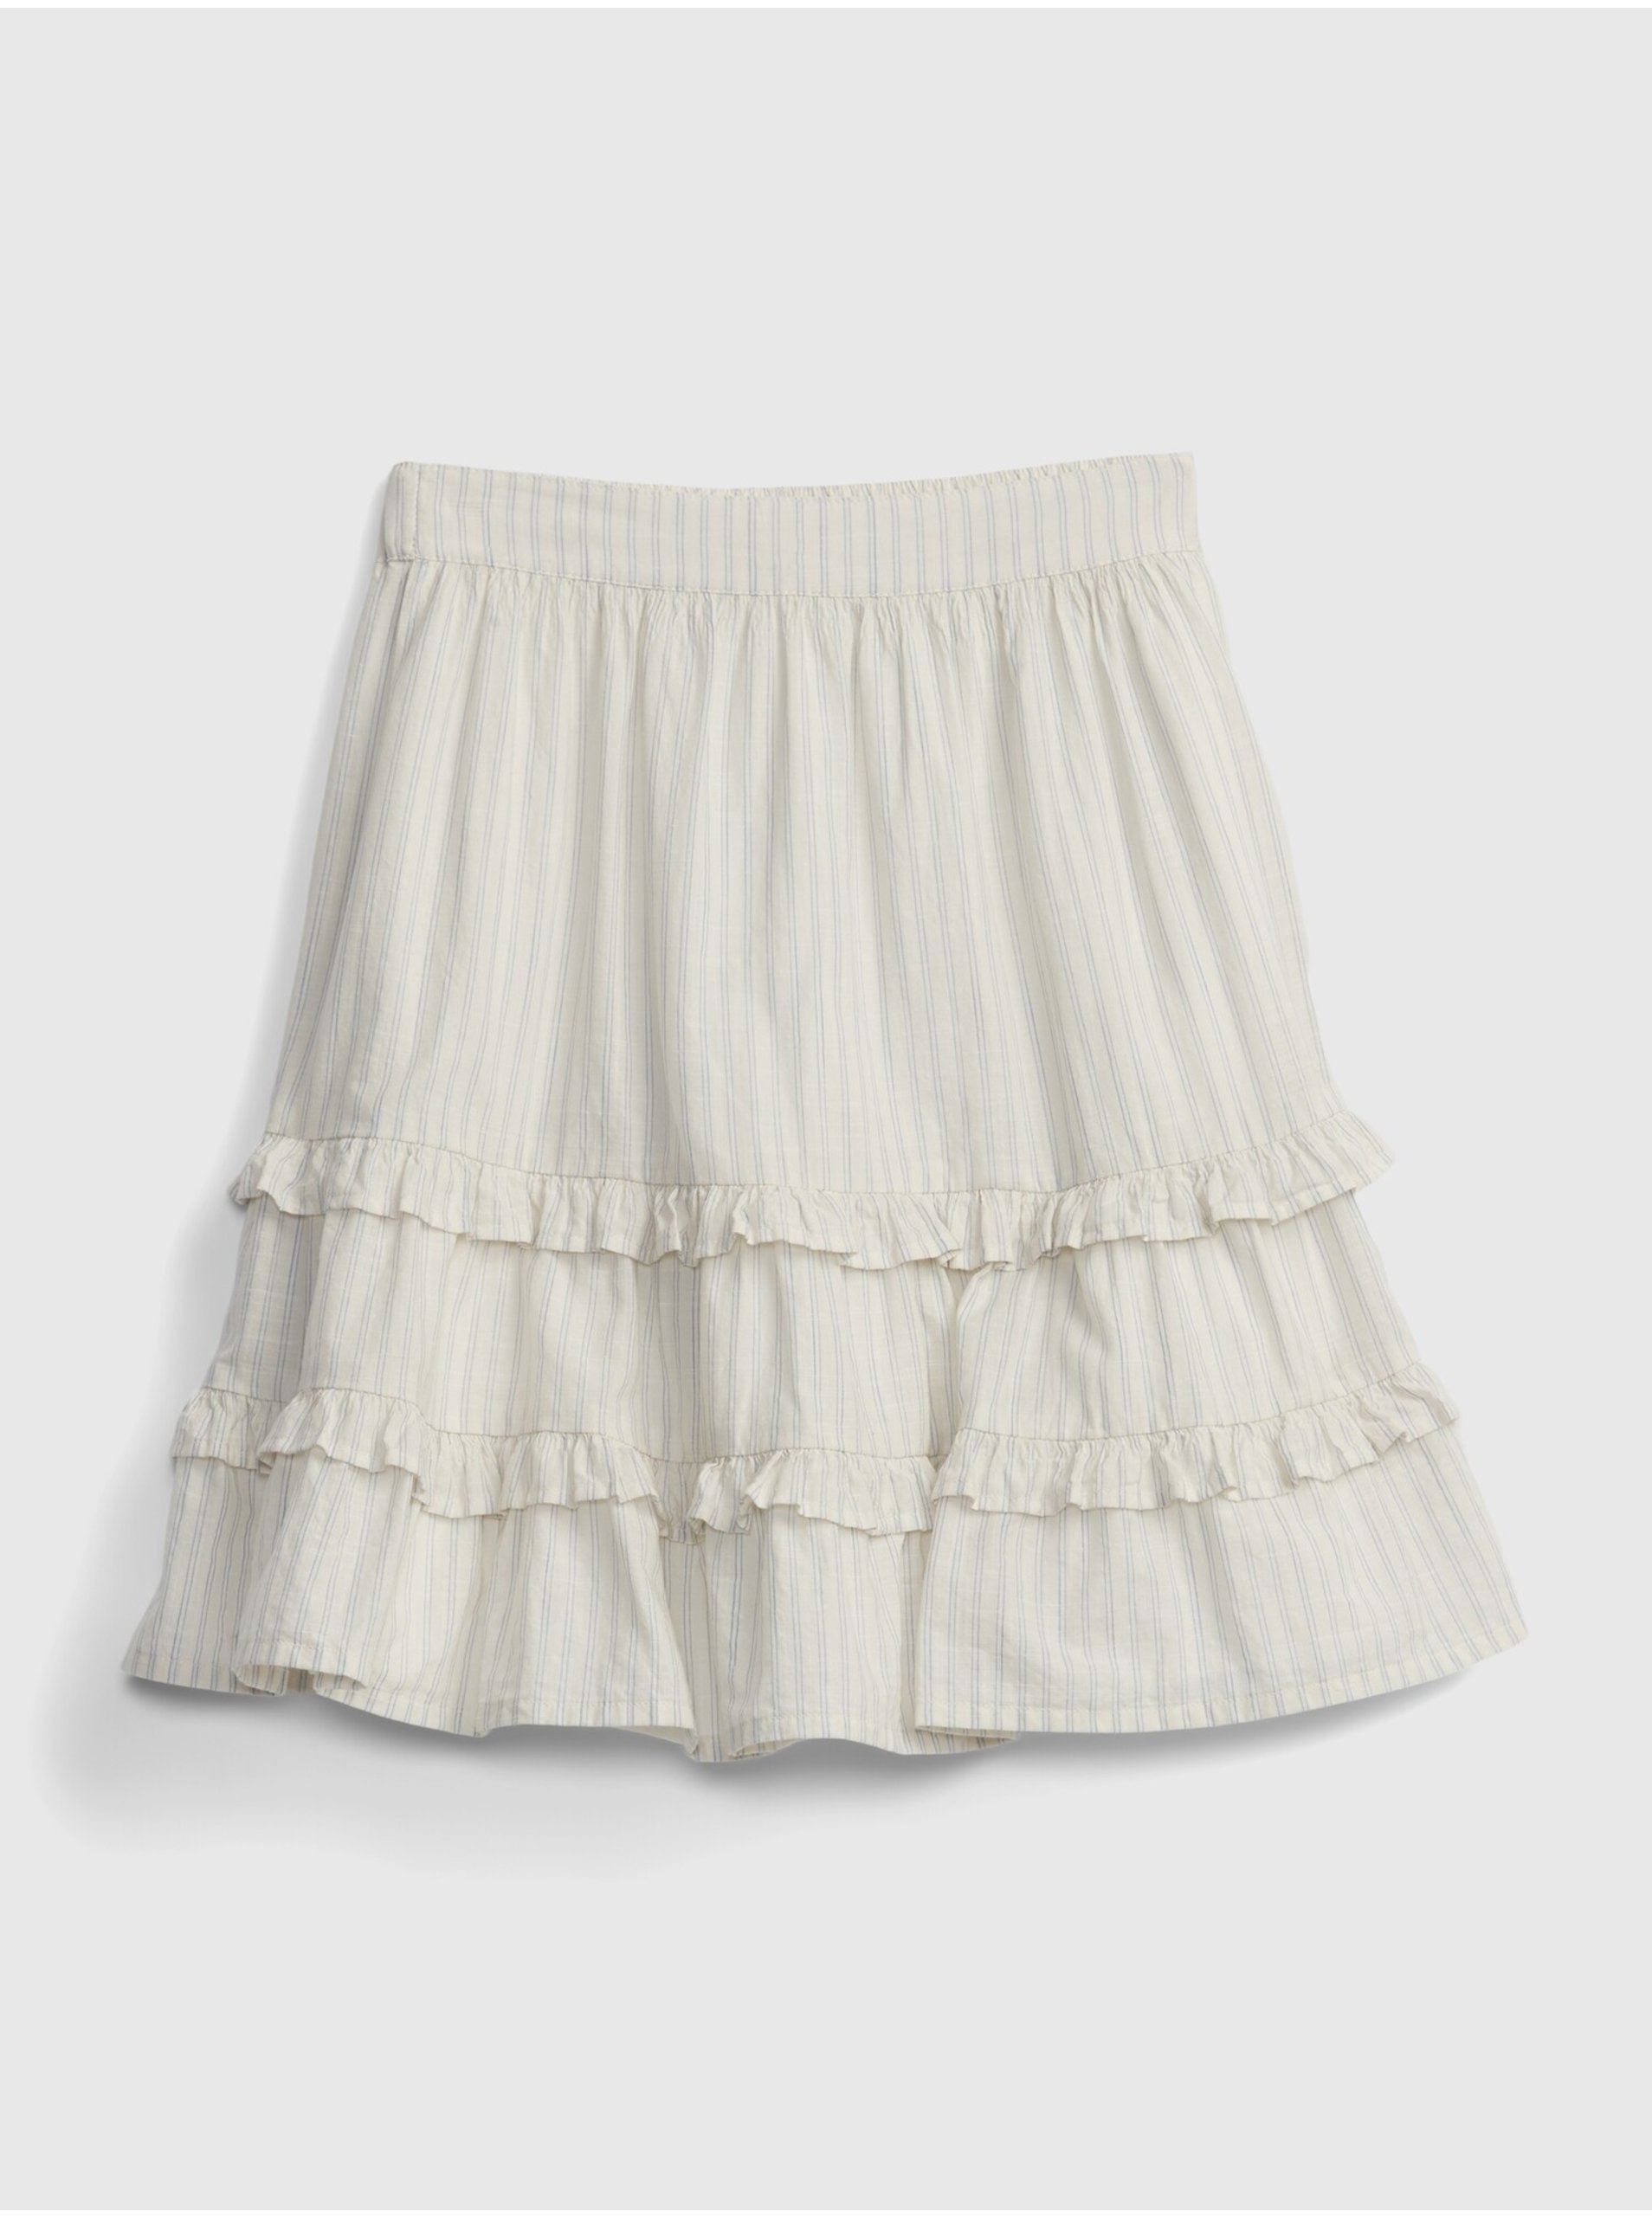 Lacno Detská sukňa stripe skirt Biela